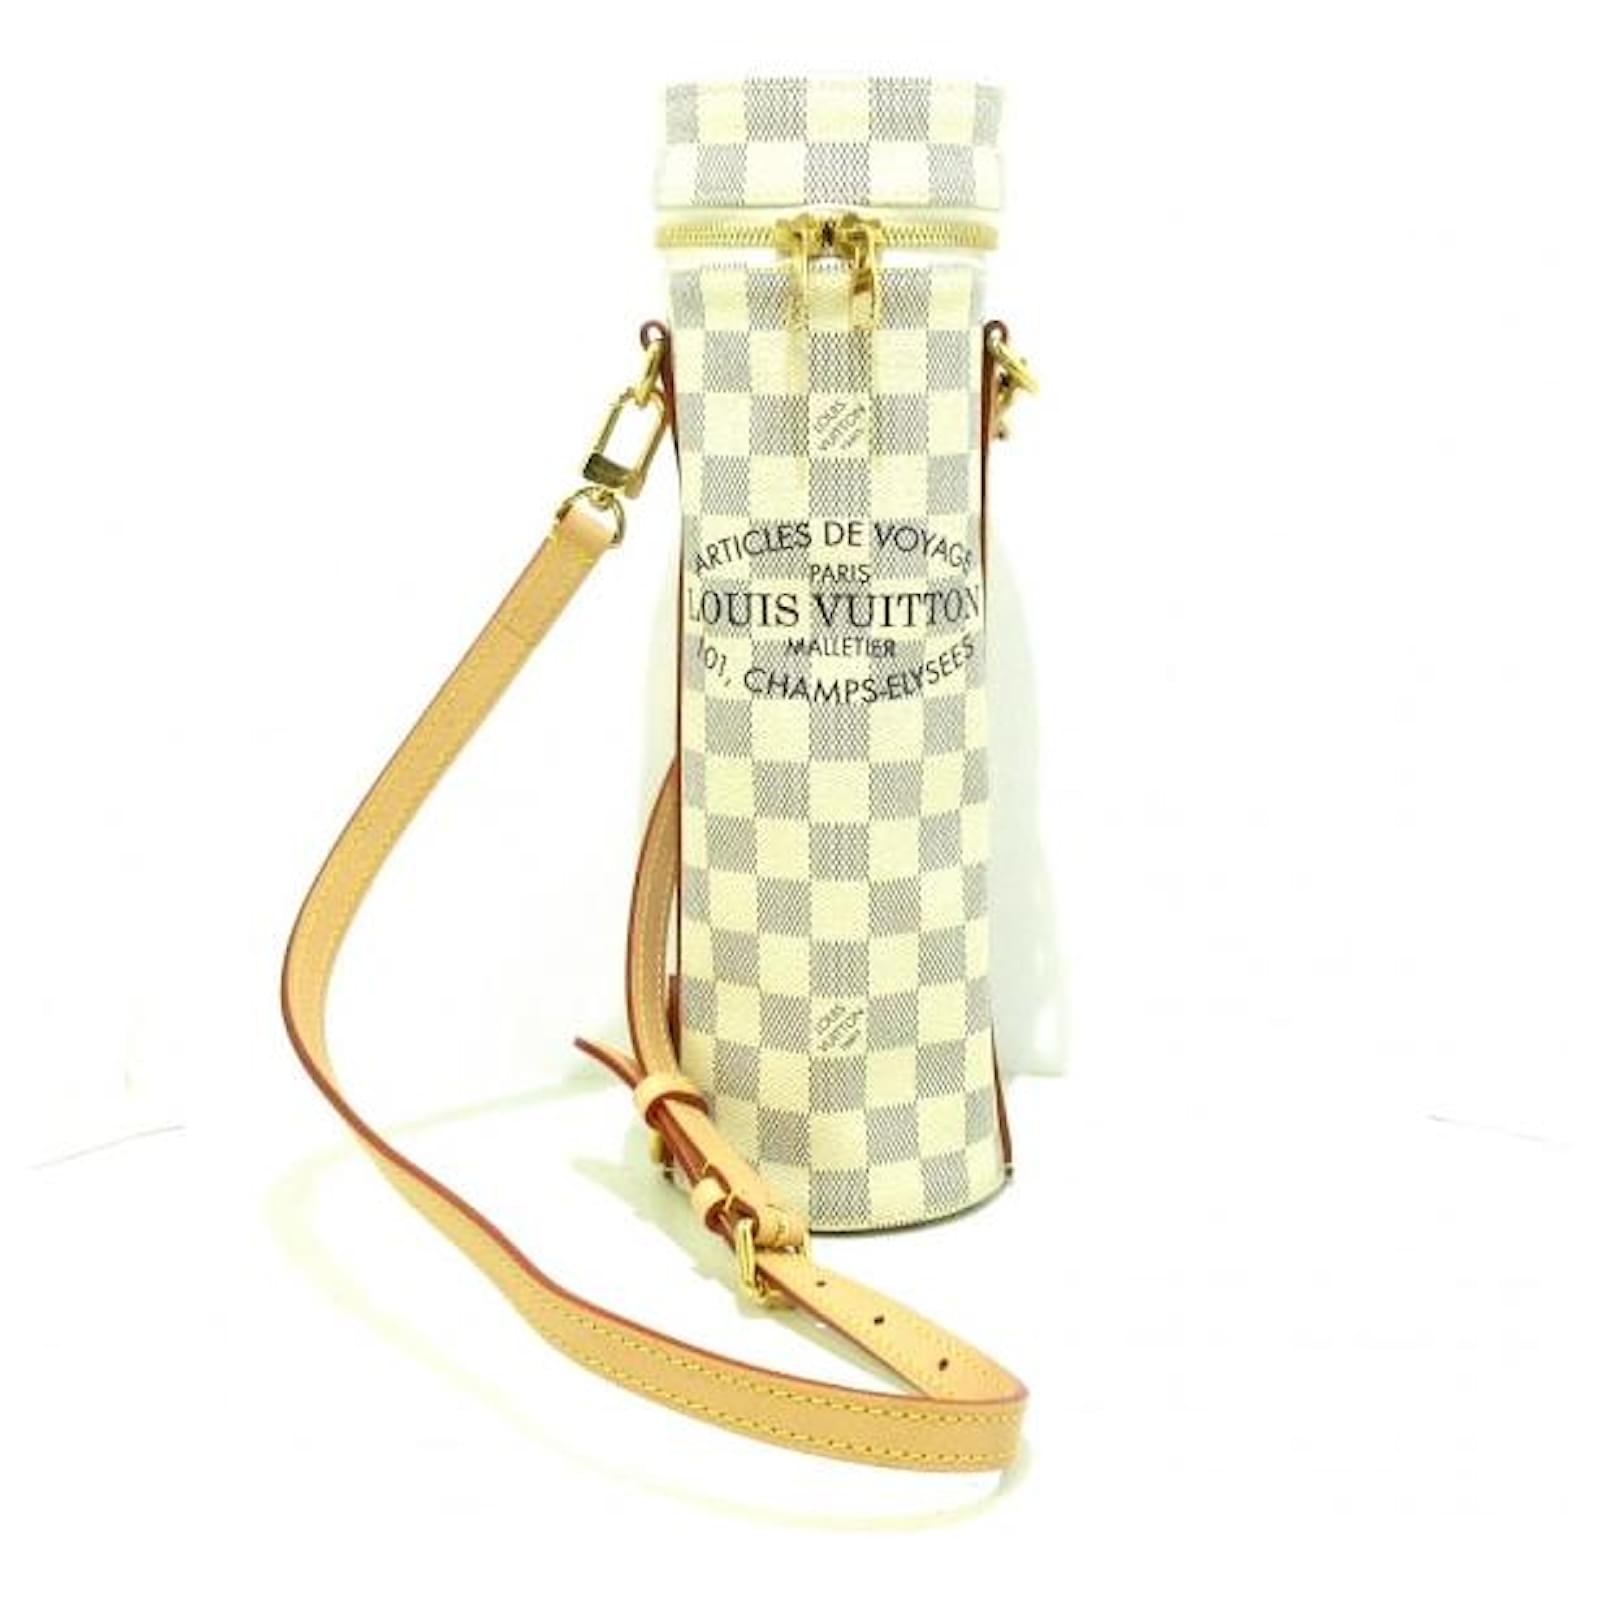 Louis Vuitton Flask Holder